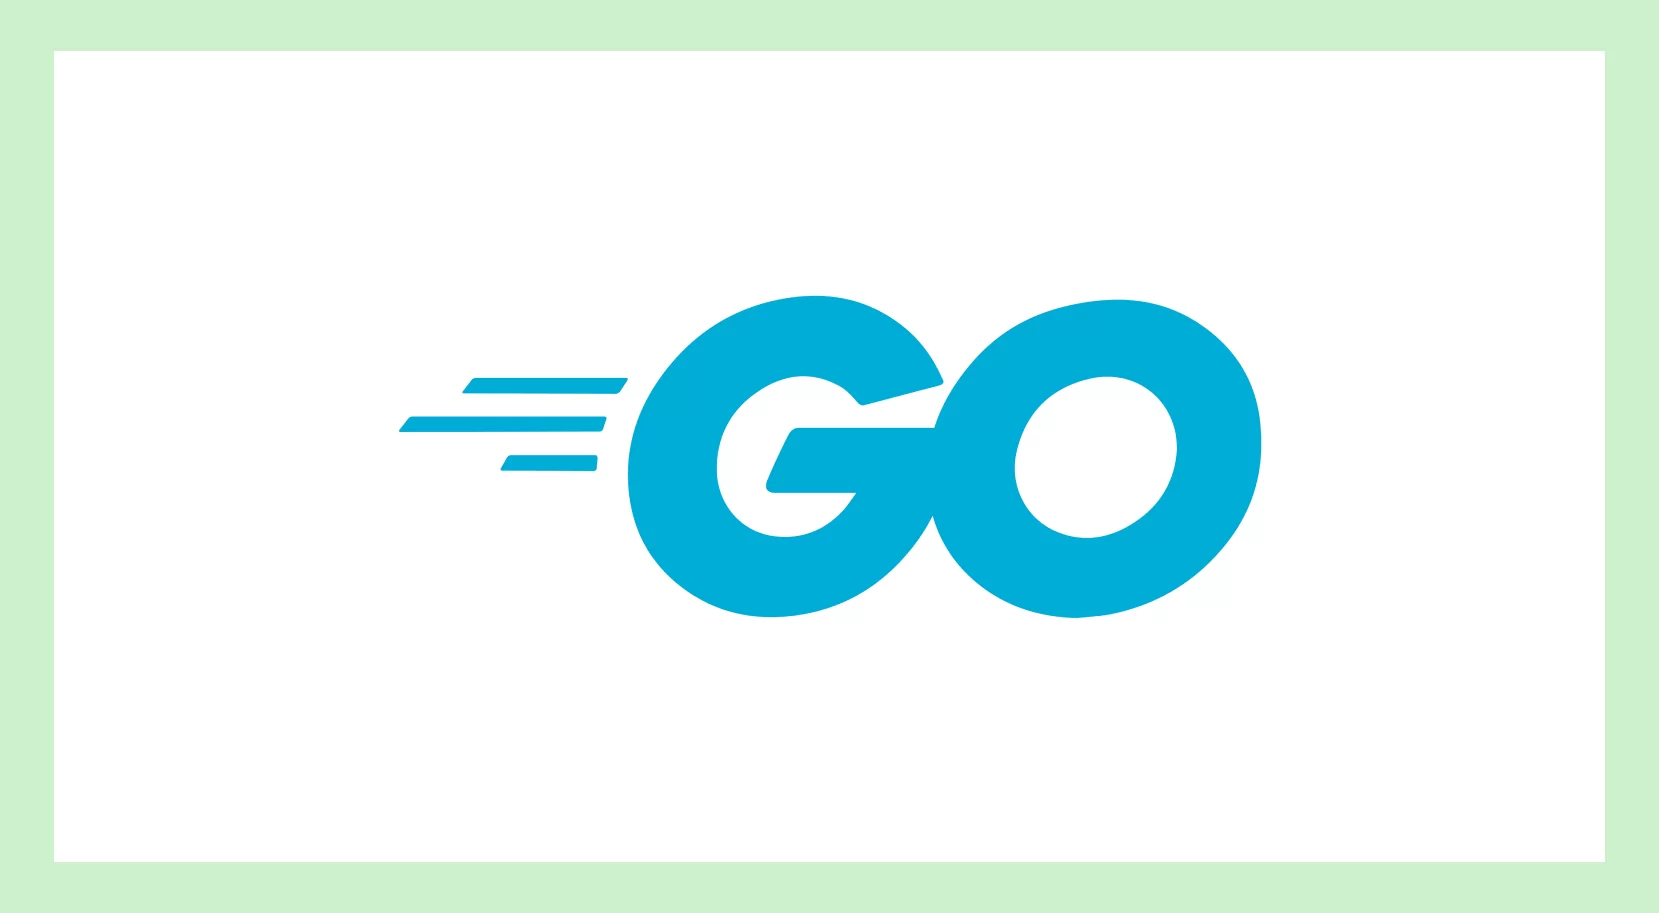 Логотип языка Go на белом фоне 